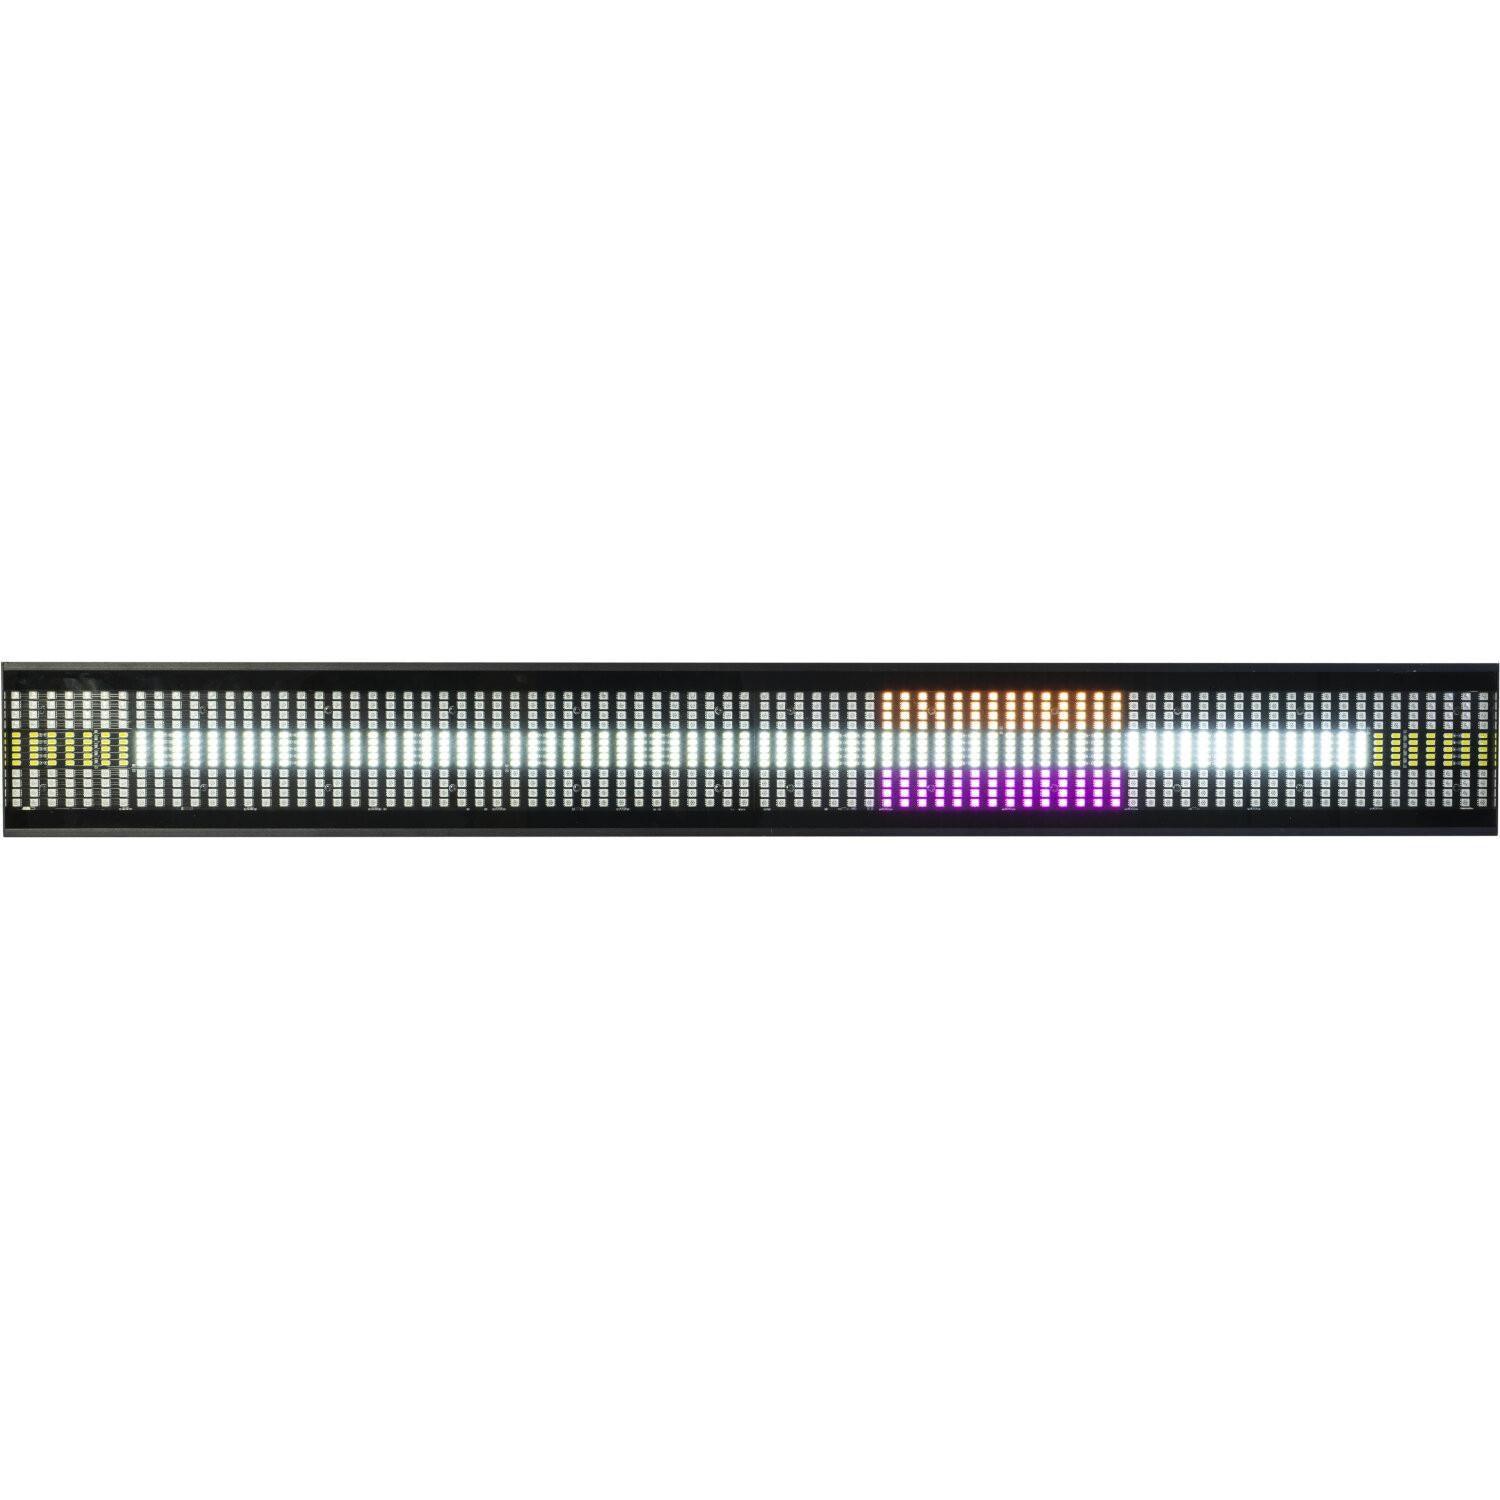 2 x AFX Light Thunderled Strobe LED Bar with RGB Lights Batten